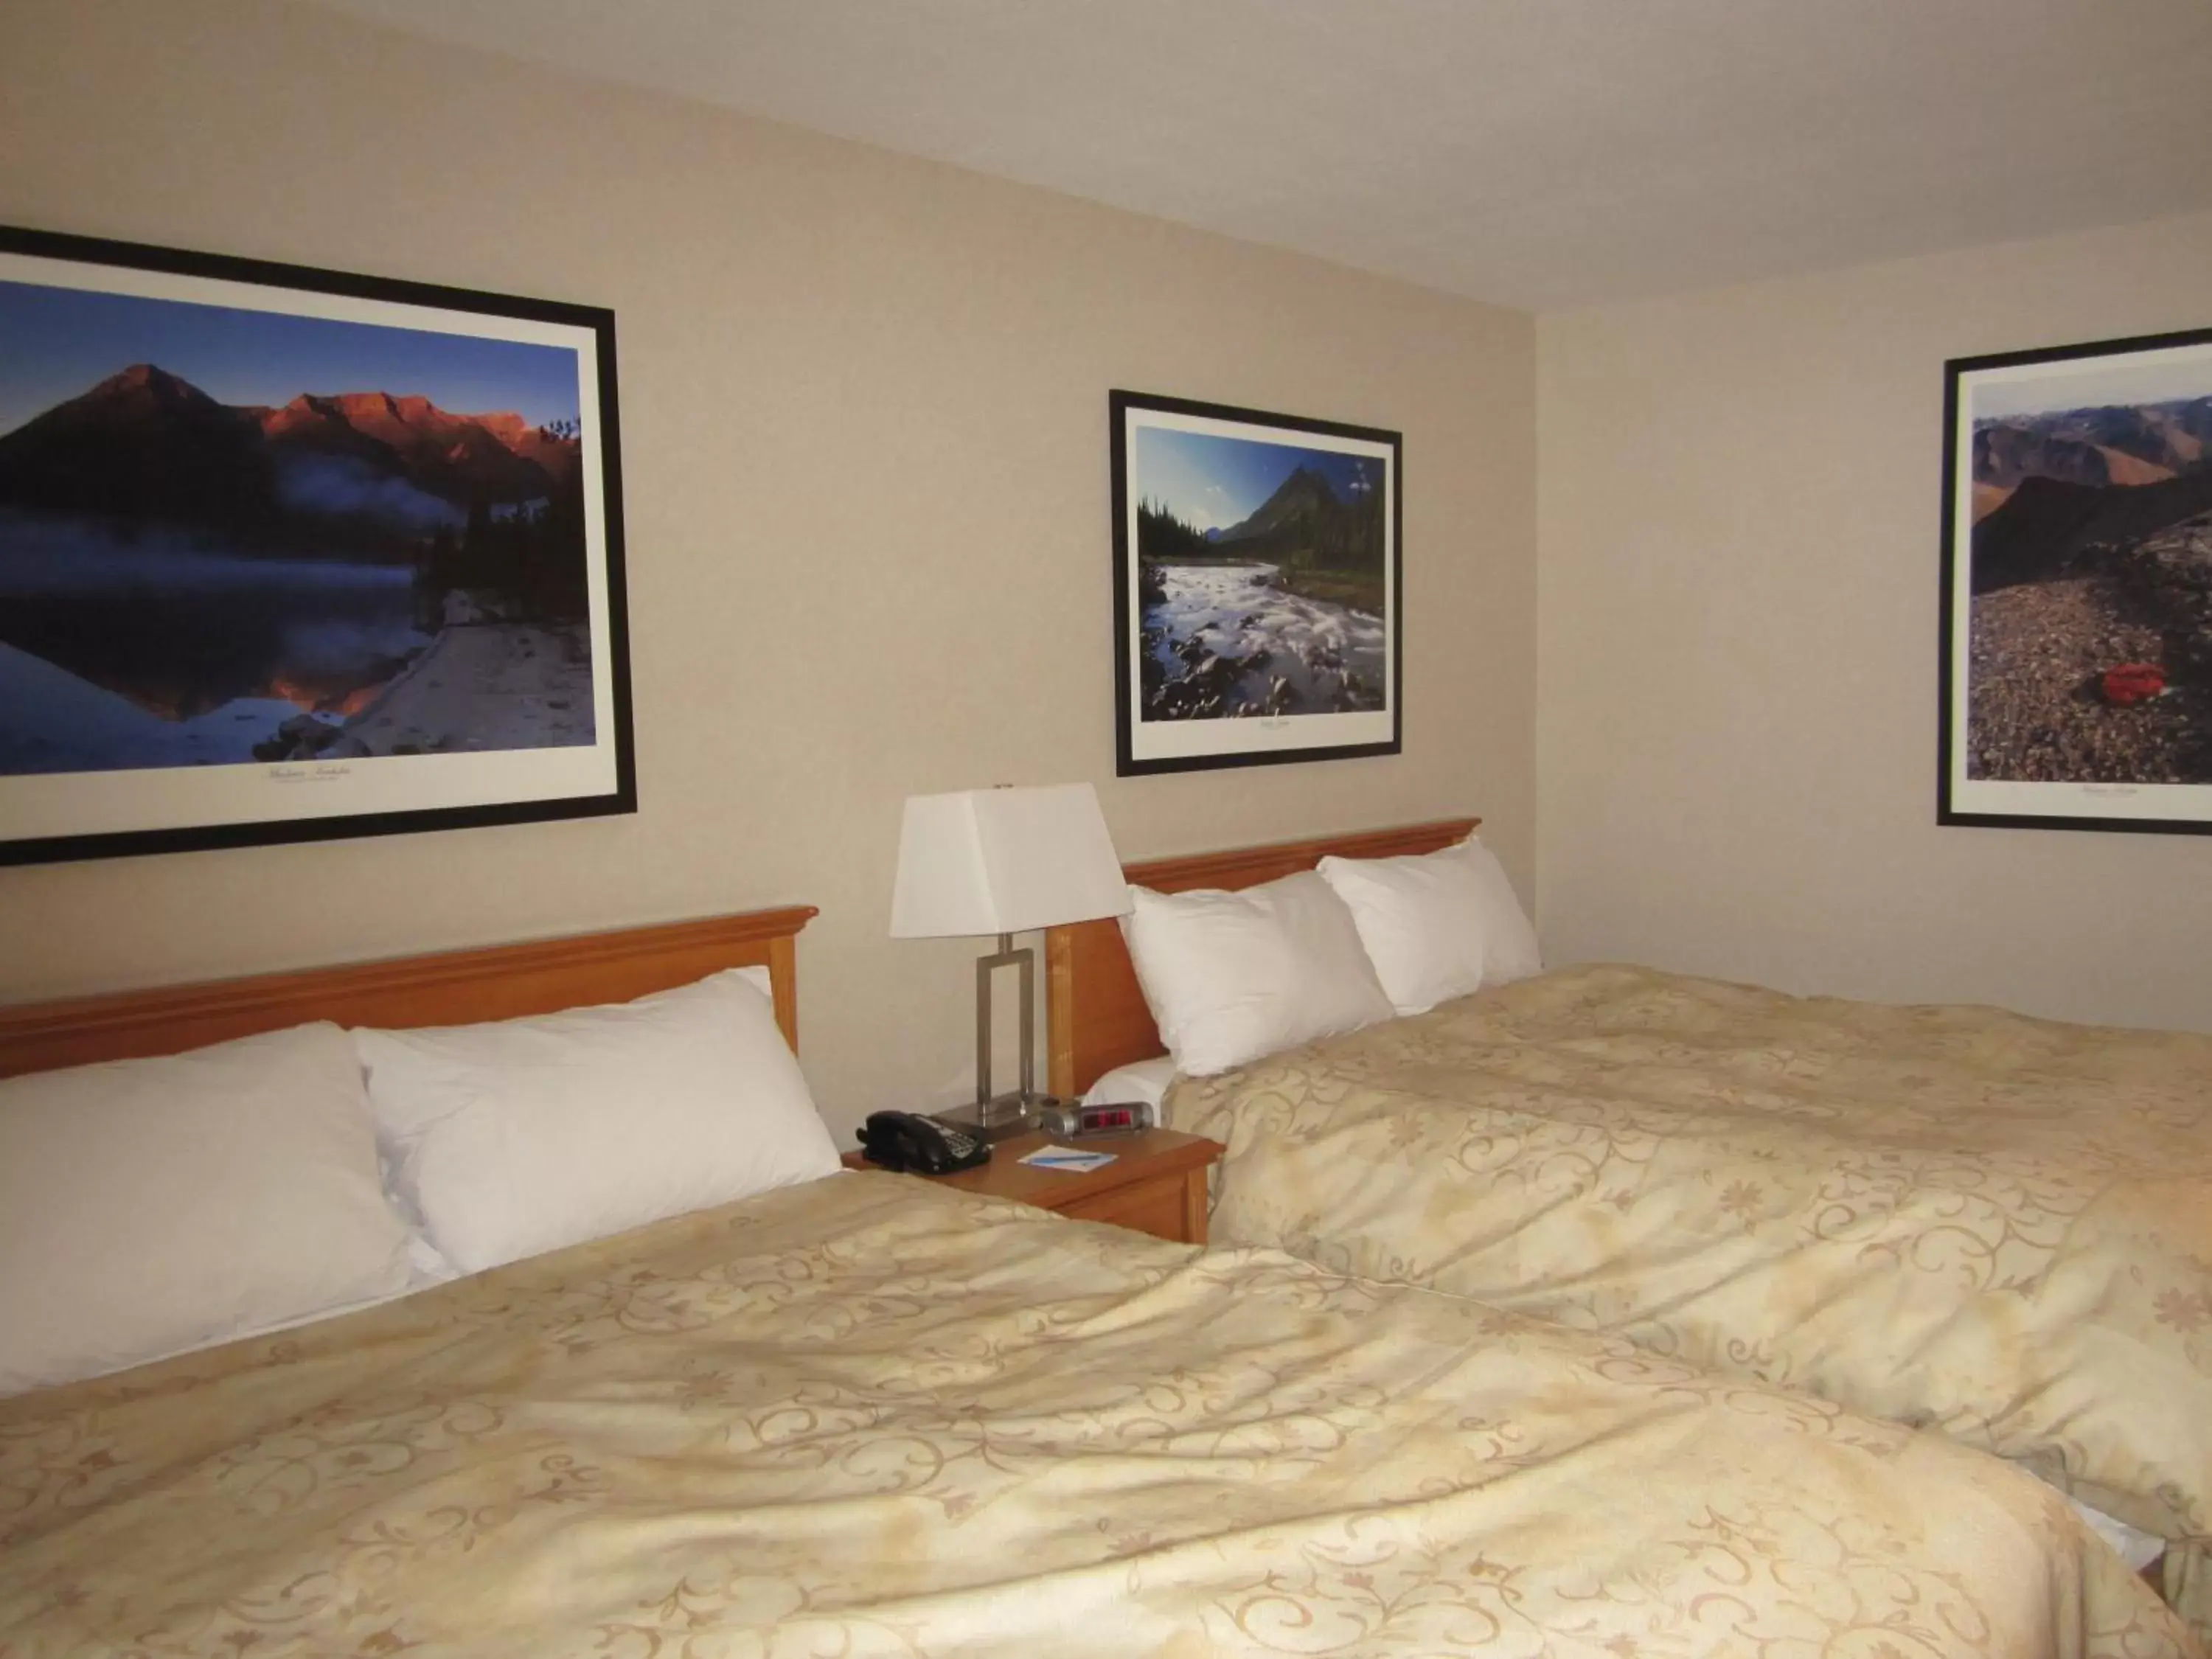 Bedroom, Bed in Woodlands Inn & Suites